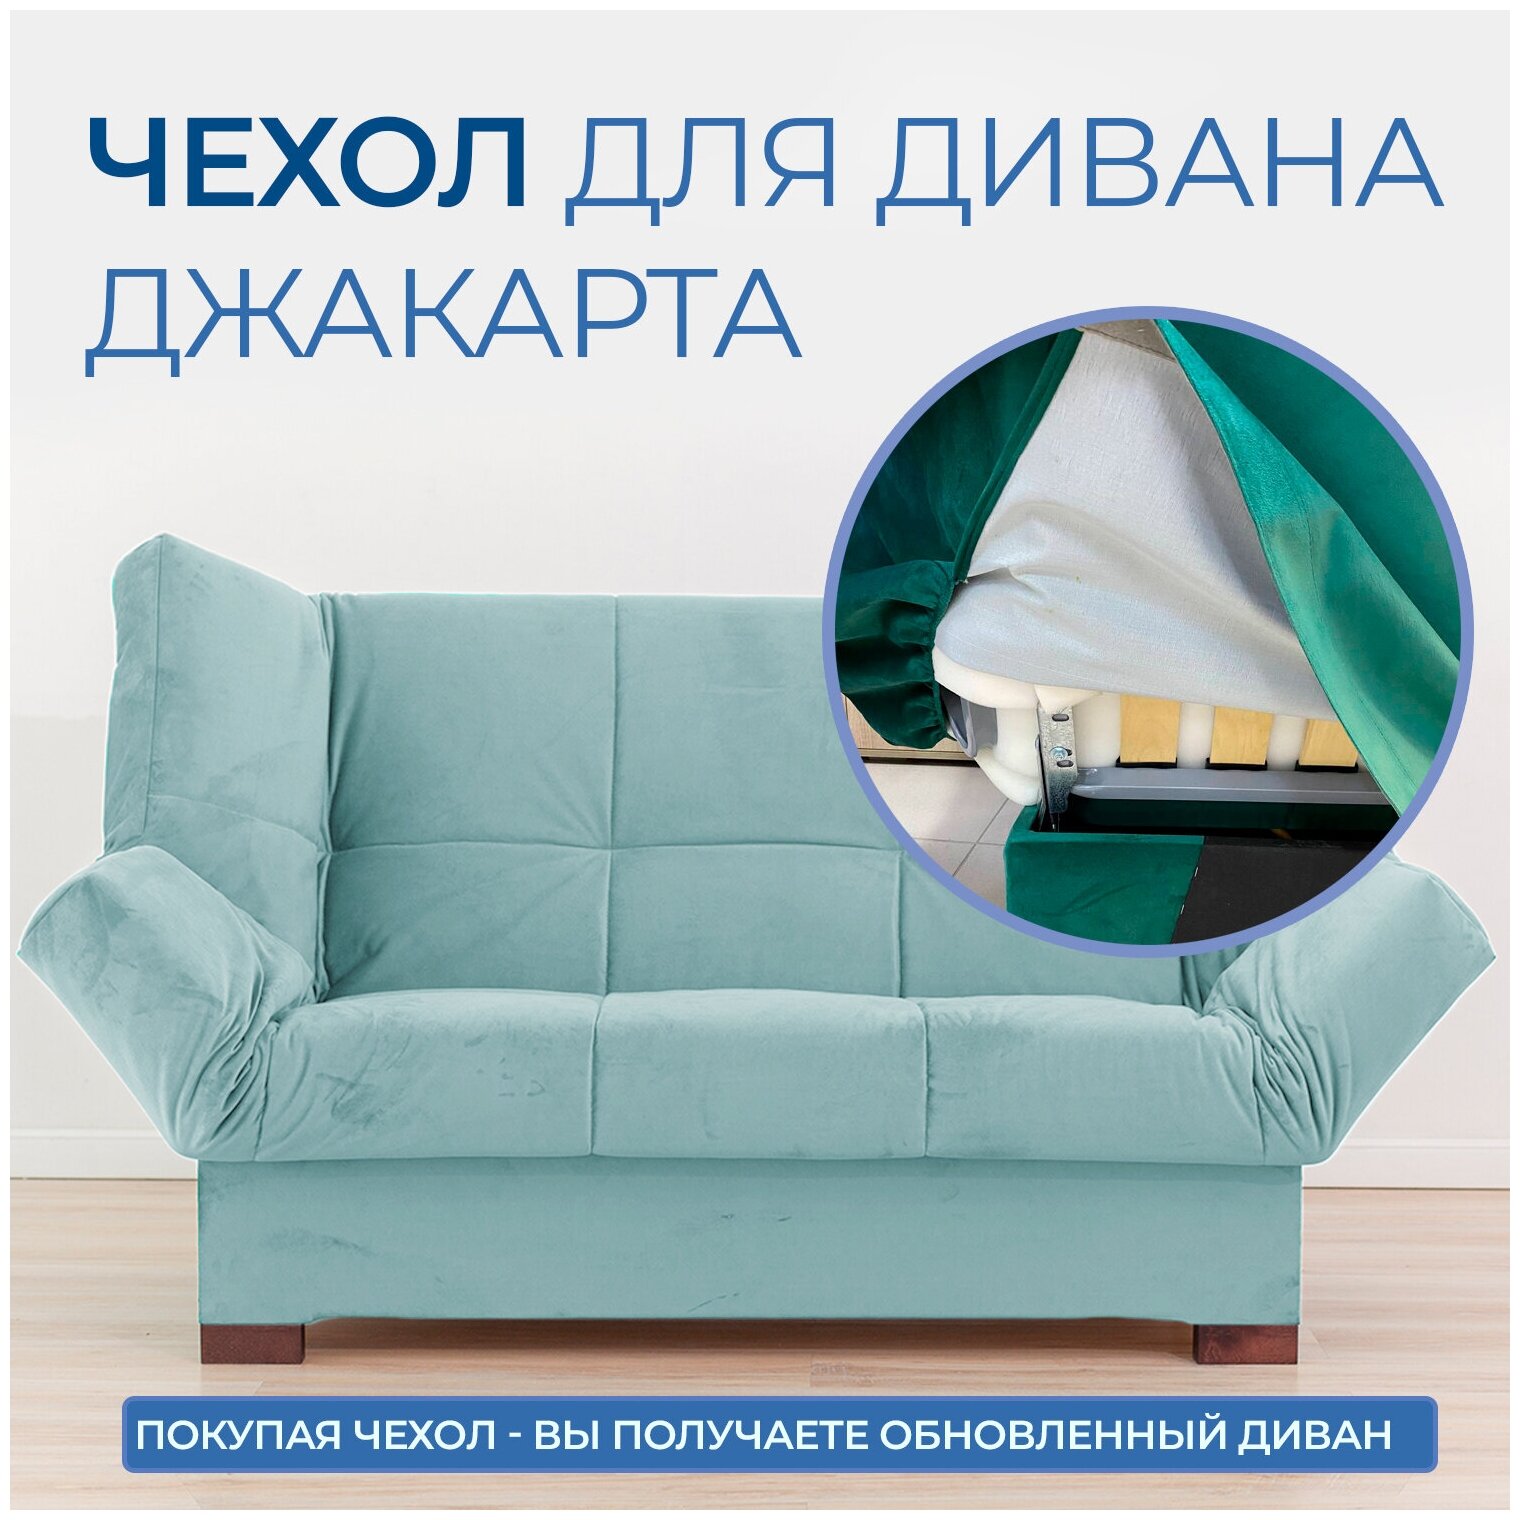 Чехол на прямой диван кровать Джакарта, механизм клик кляк, книжка, 205х135 см, бирюзовый